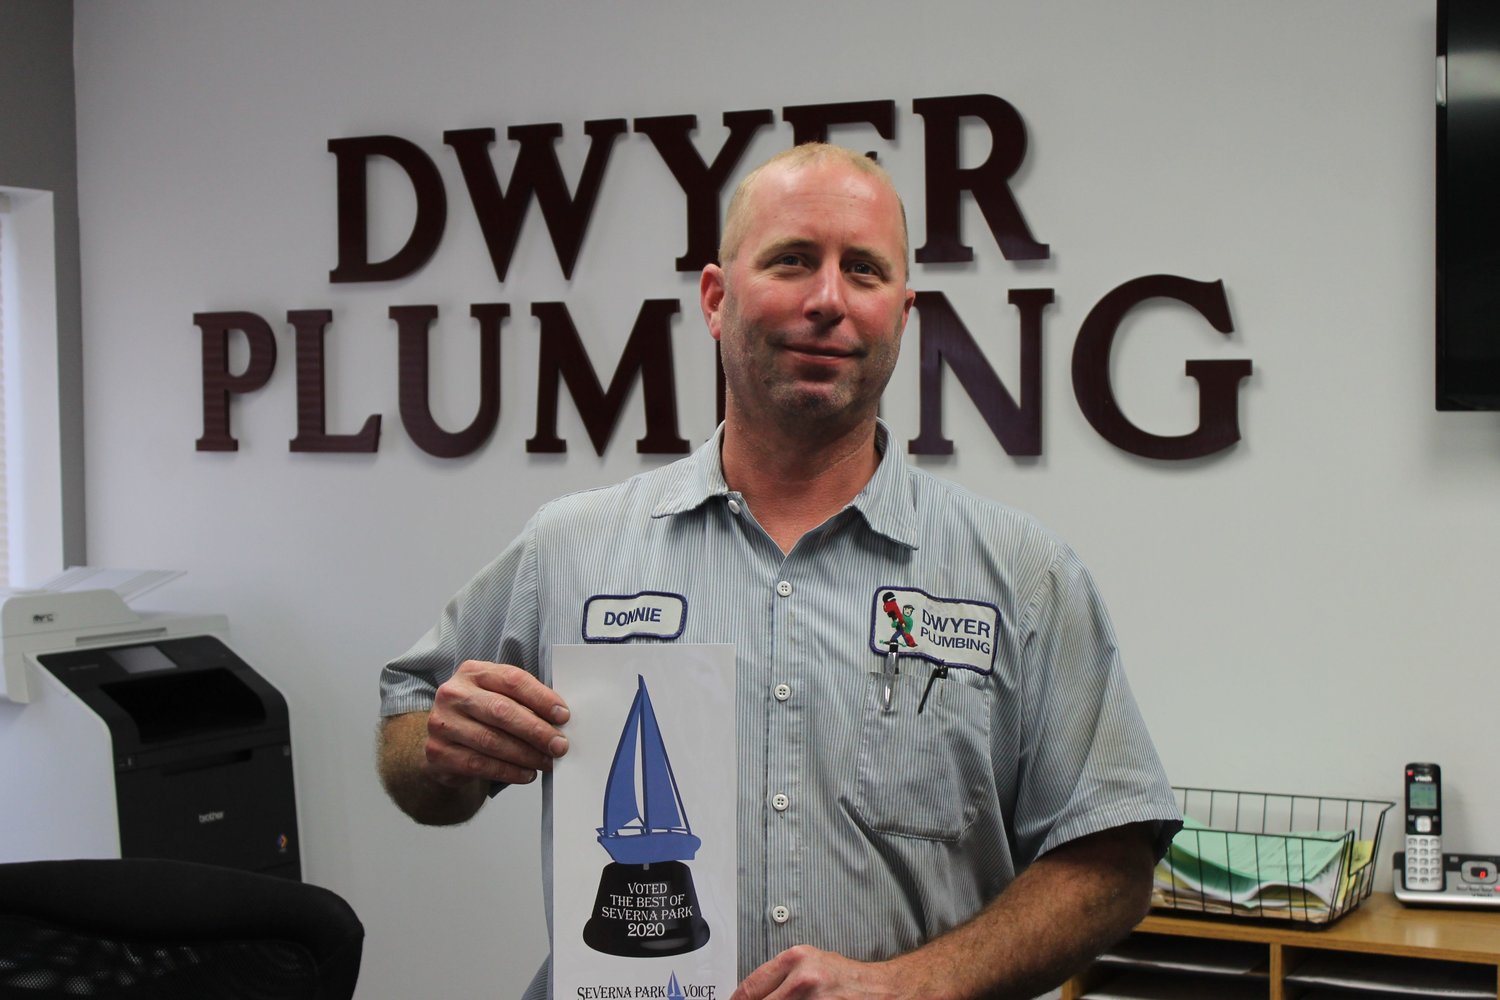 Dwyer Plumbing was voted Best Plumbing Service.